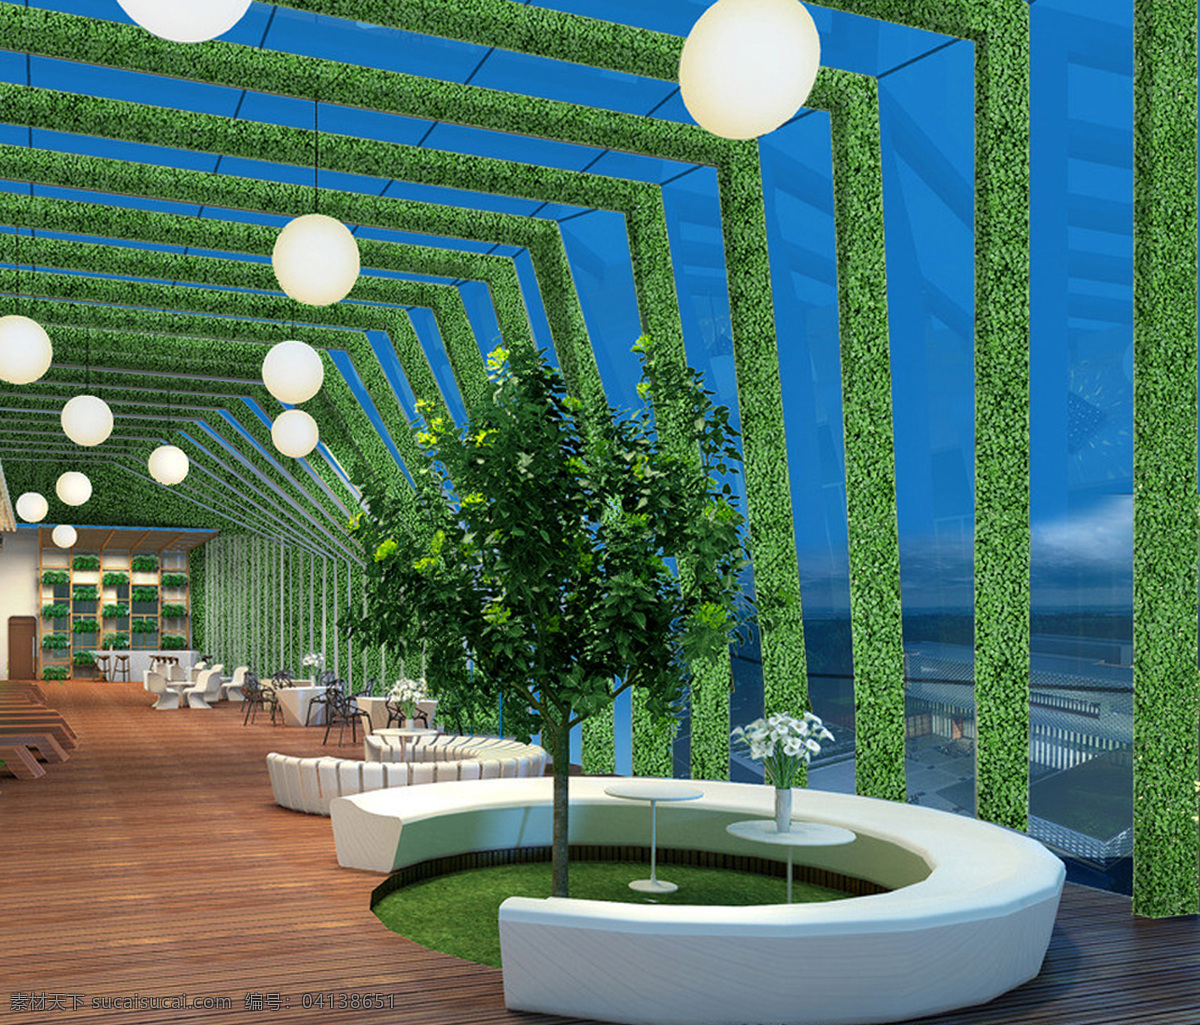 仿真植物 植物墙 园林景观 展厅 迷宫 仿真树叶 办公室 景观设计 环境设计